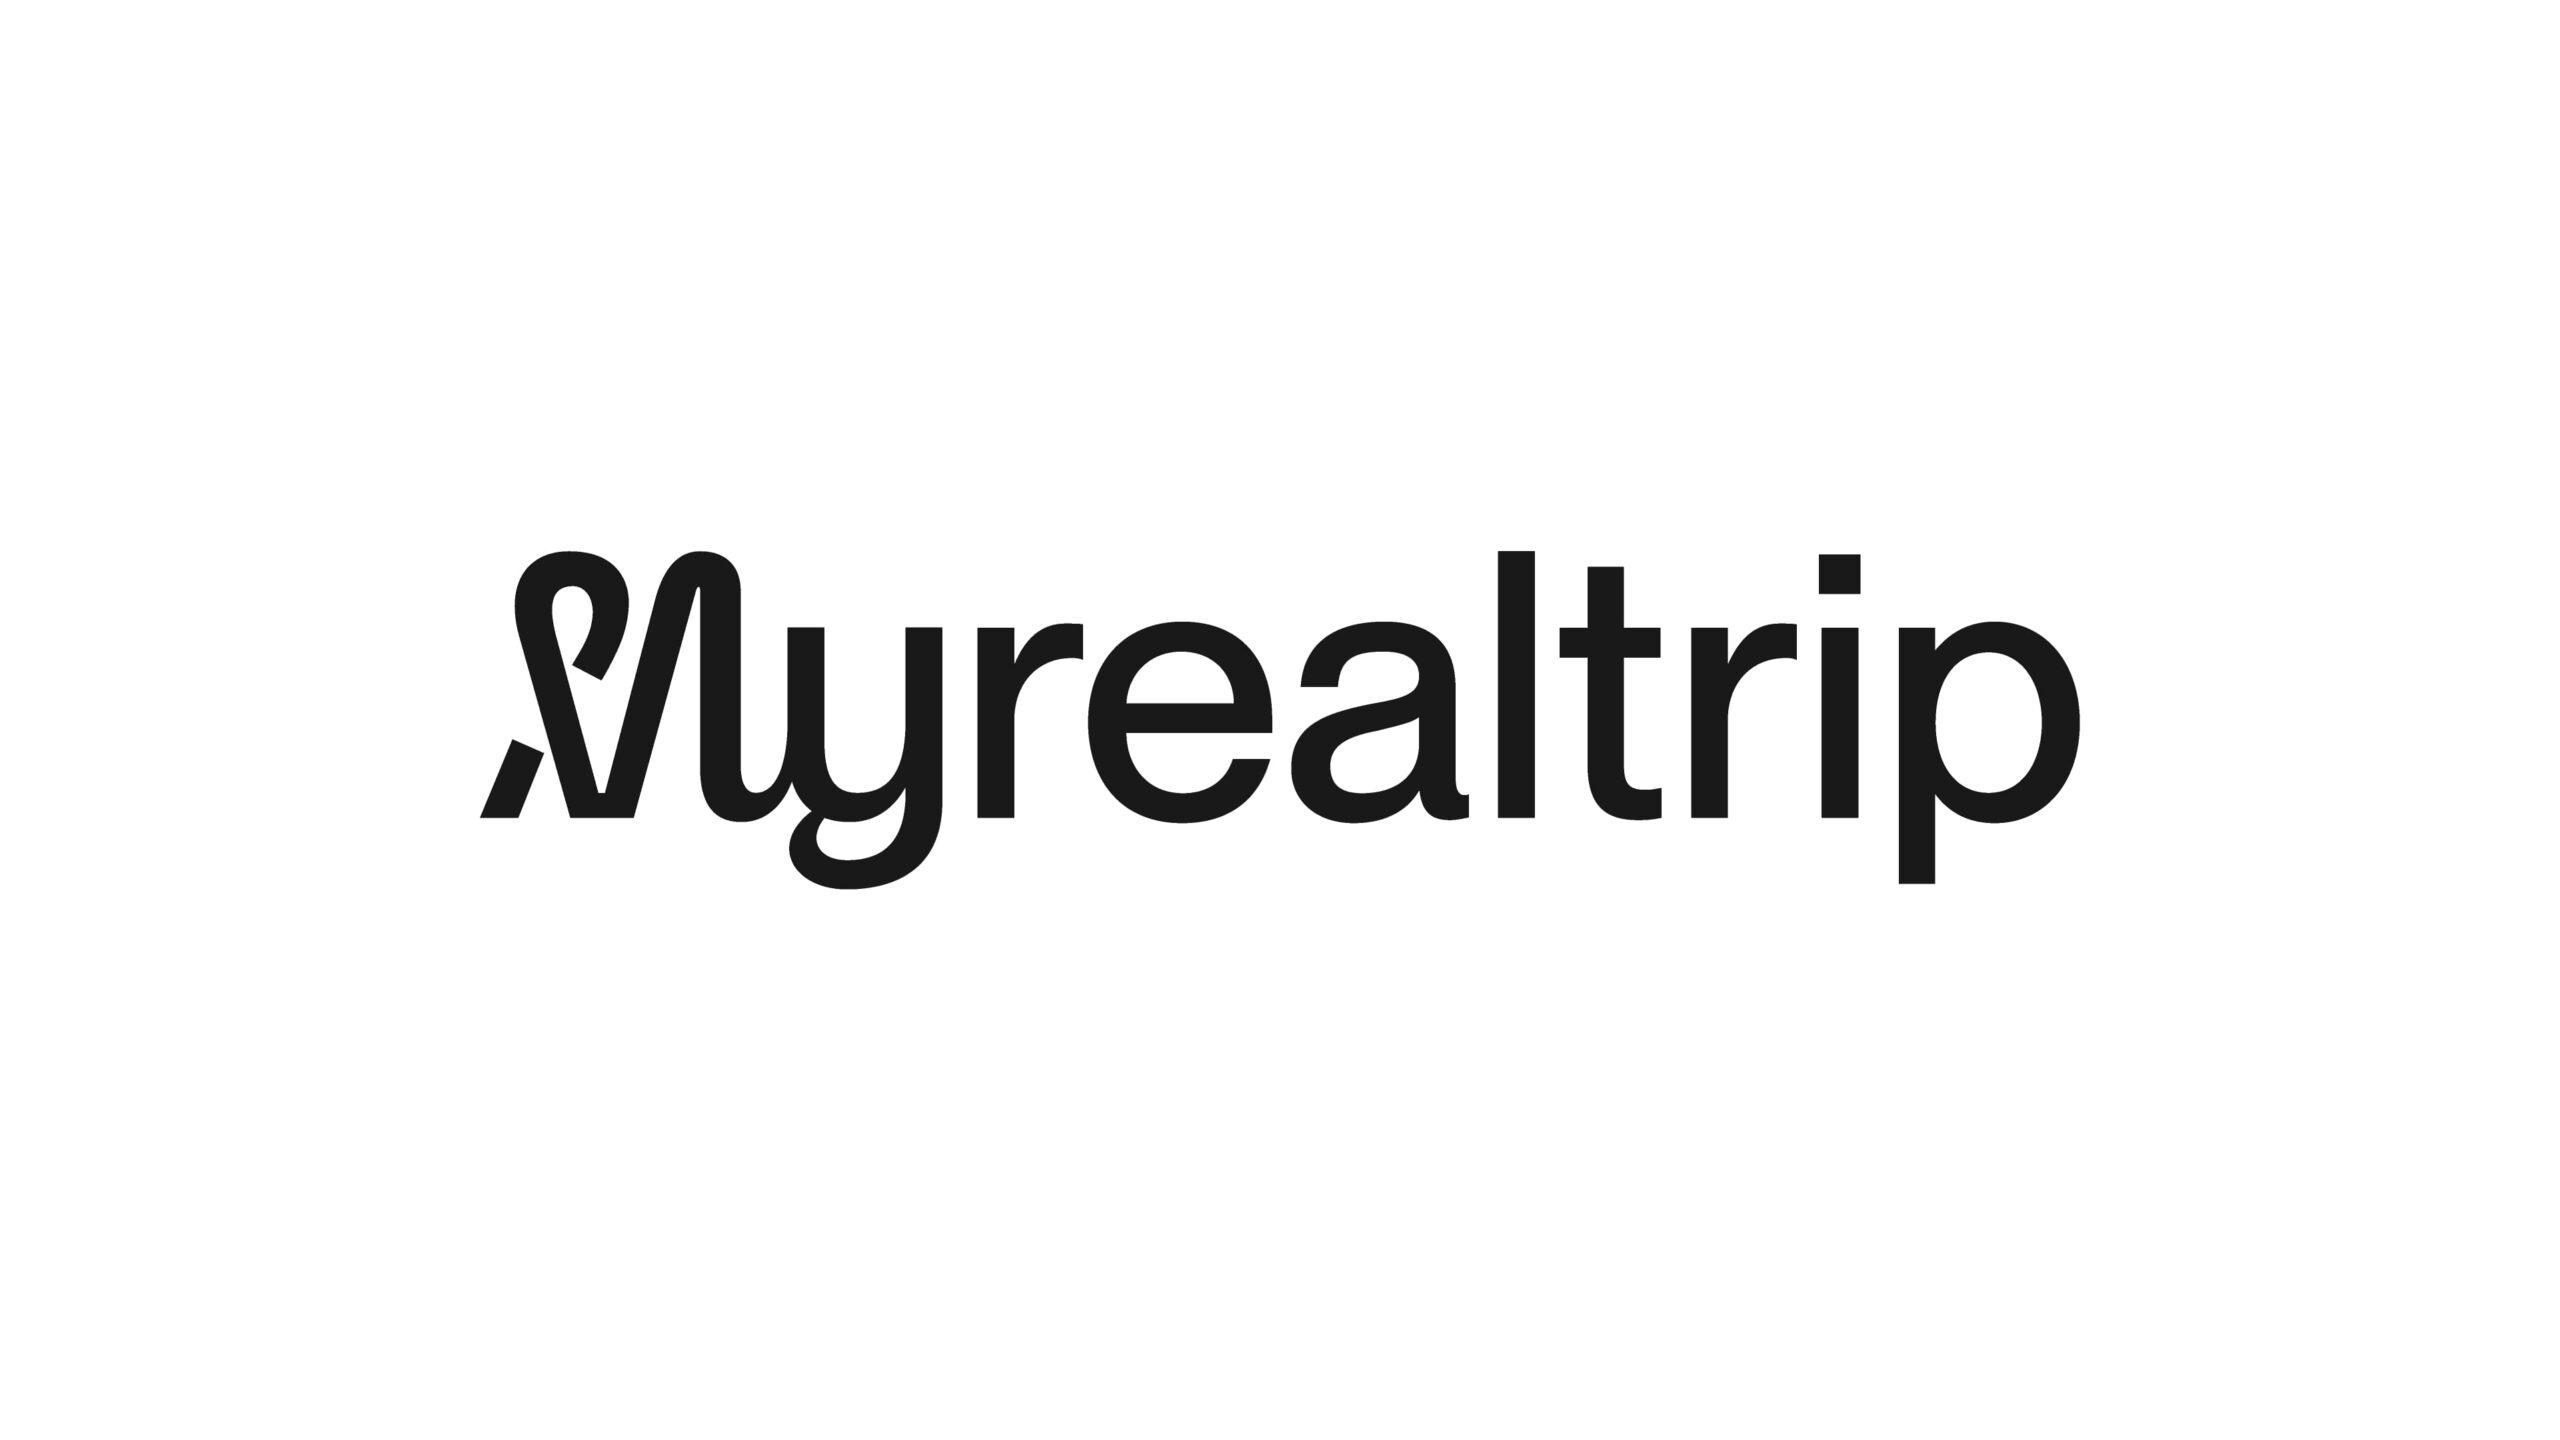 韓国のMyrealtrip社、5,600万ドルの新規資金調達で旅行業界の回復を狙う